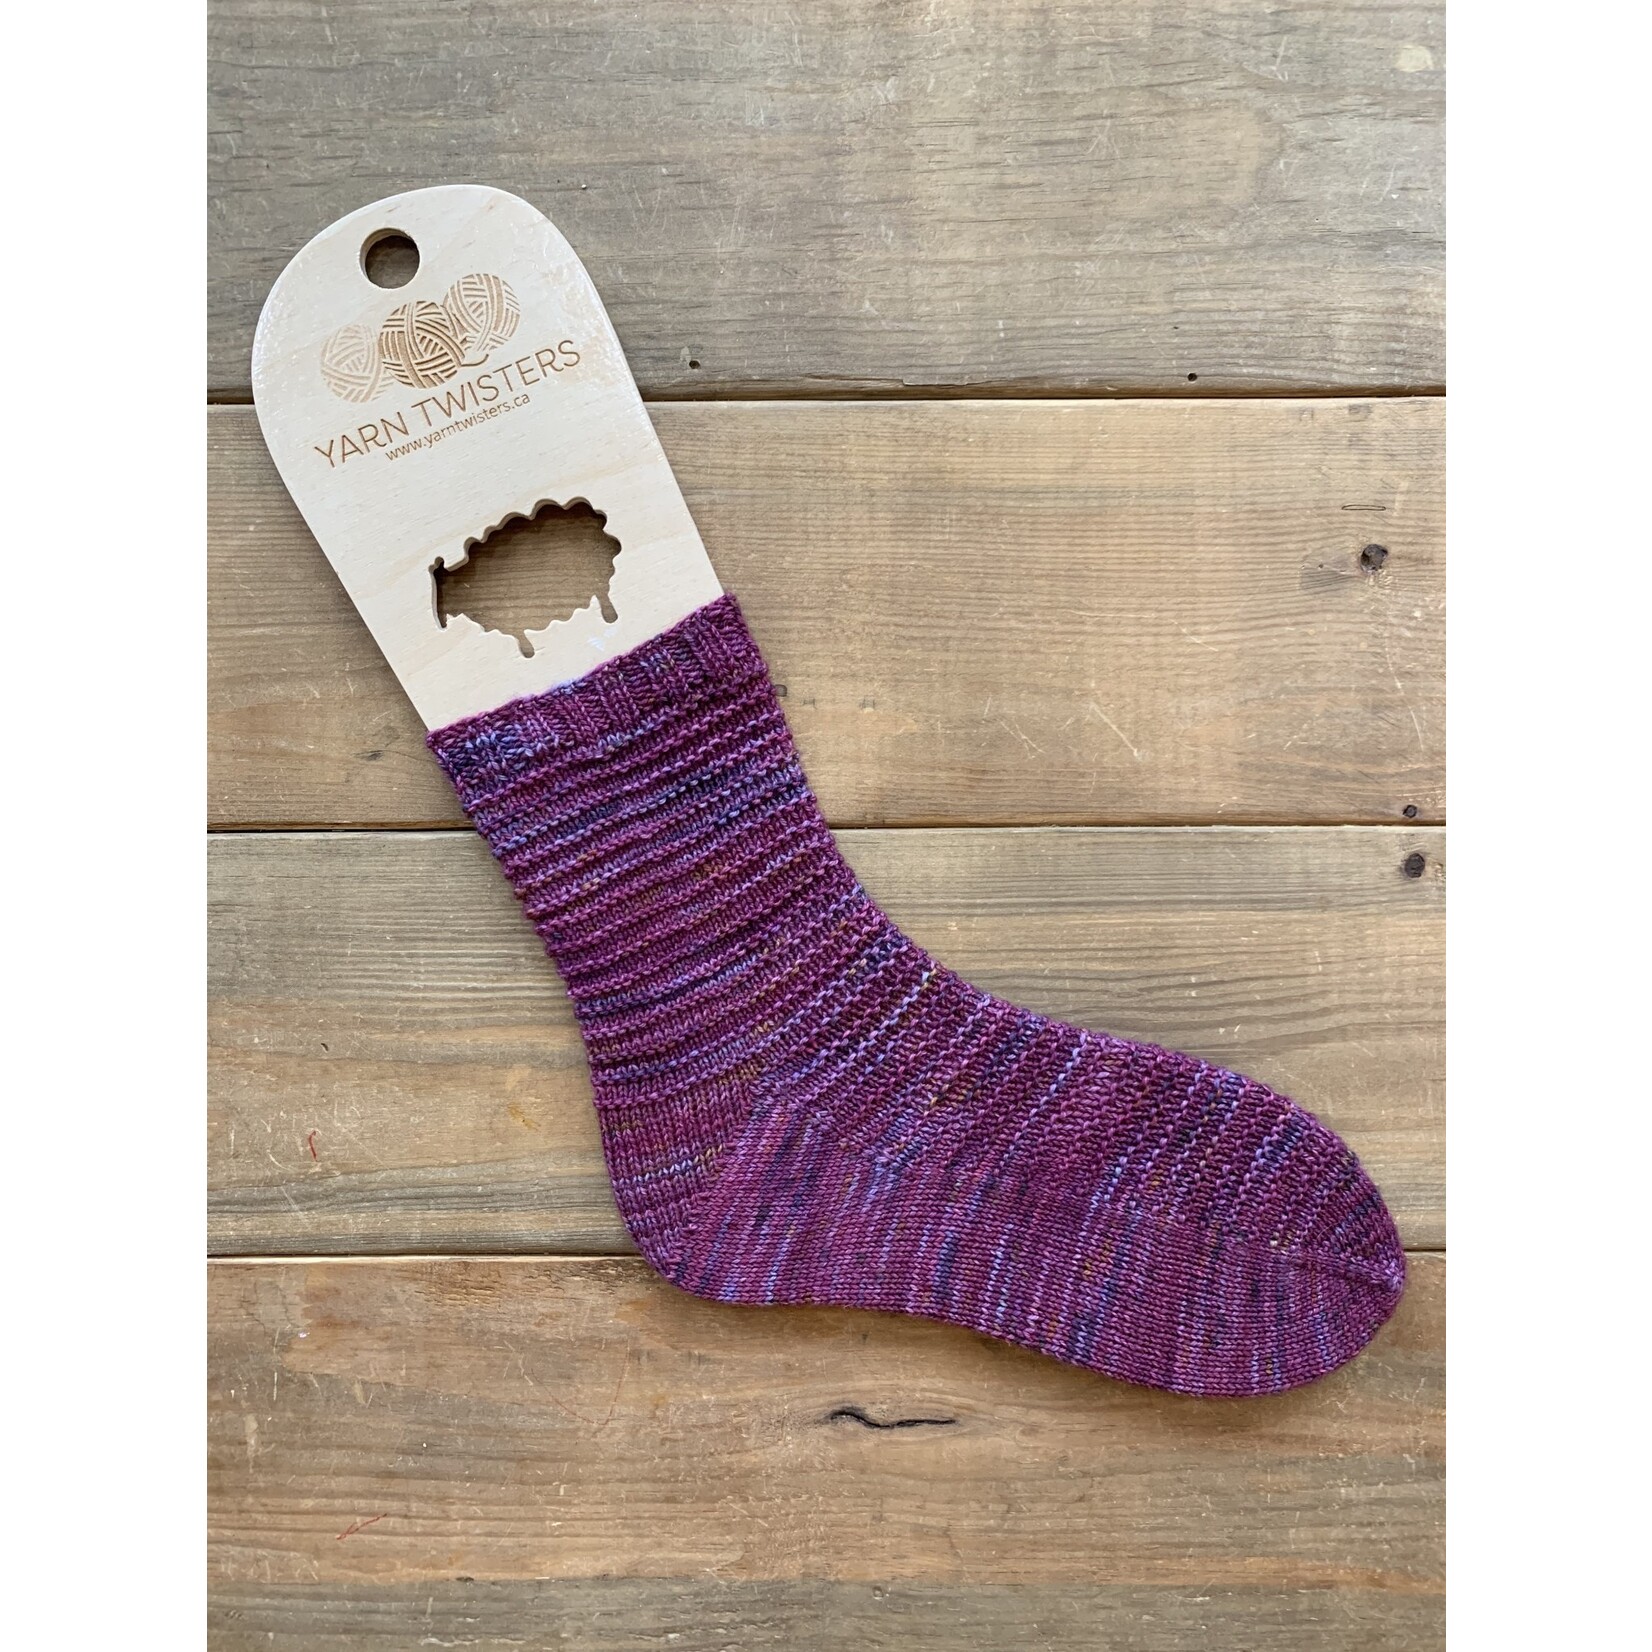 Yarn Twisters June Socks